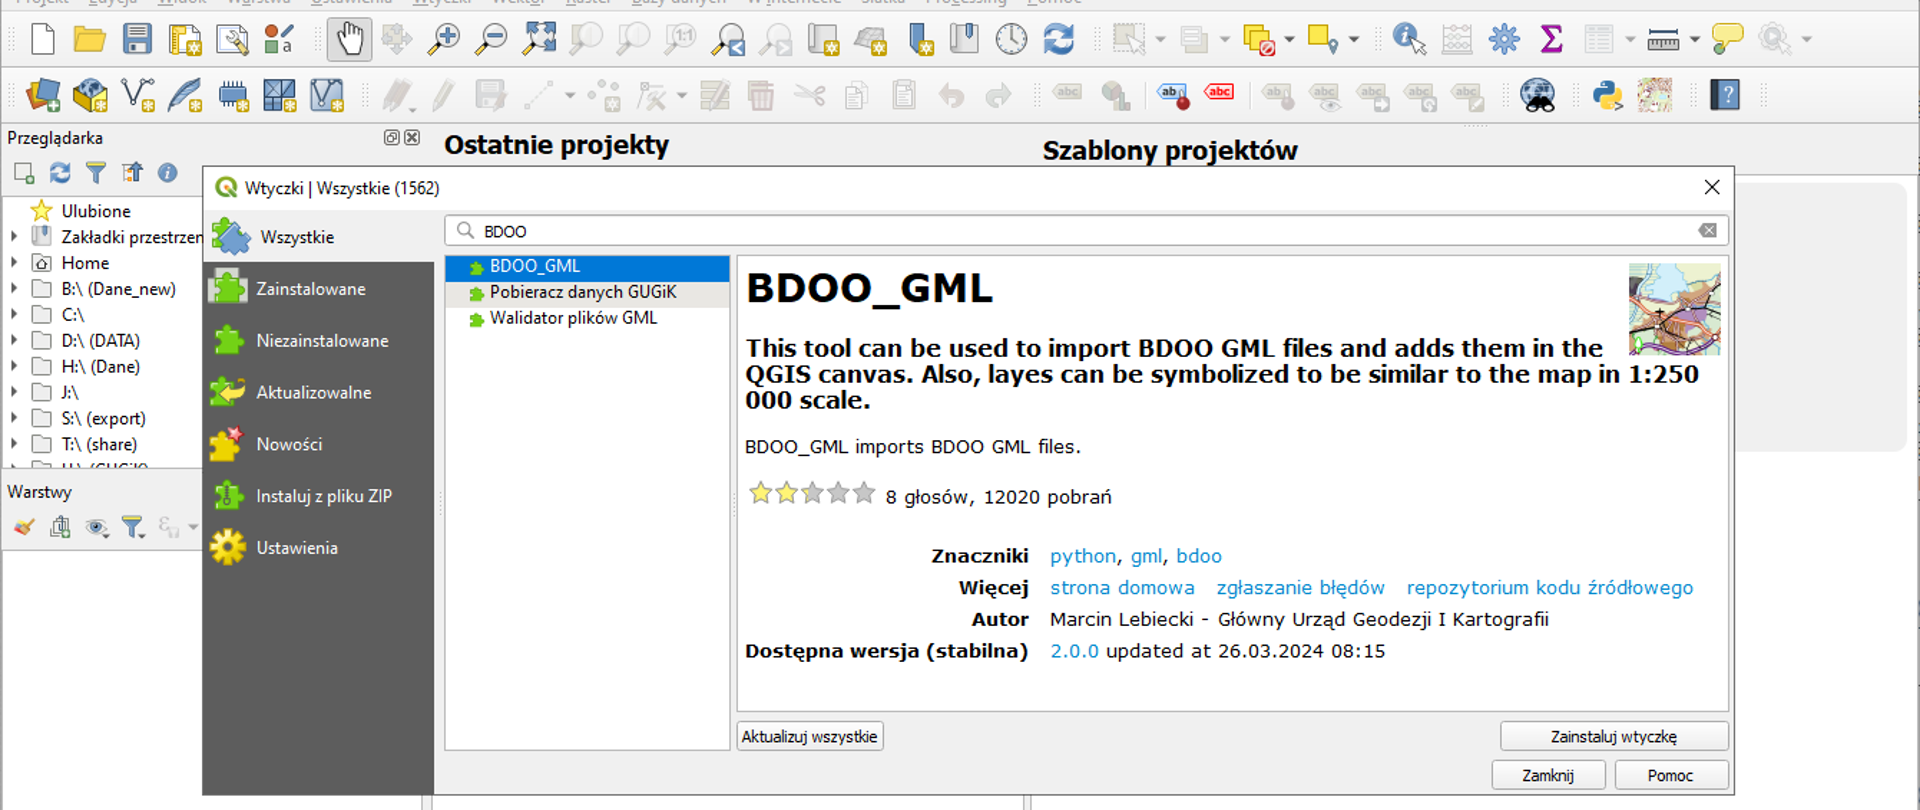 Ilustracja przedstawia sposób instalacji wtyczki BDOO_GML w oprogramowaniu QGIS